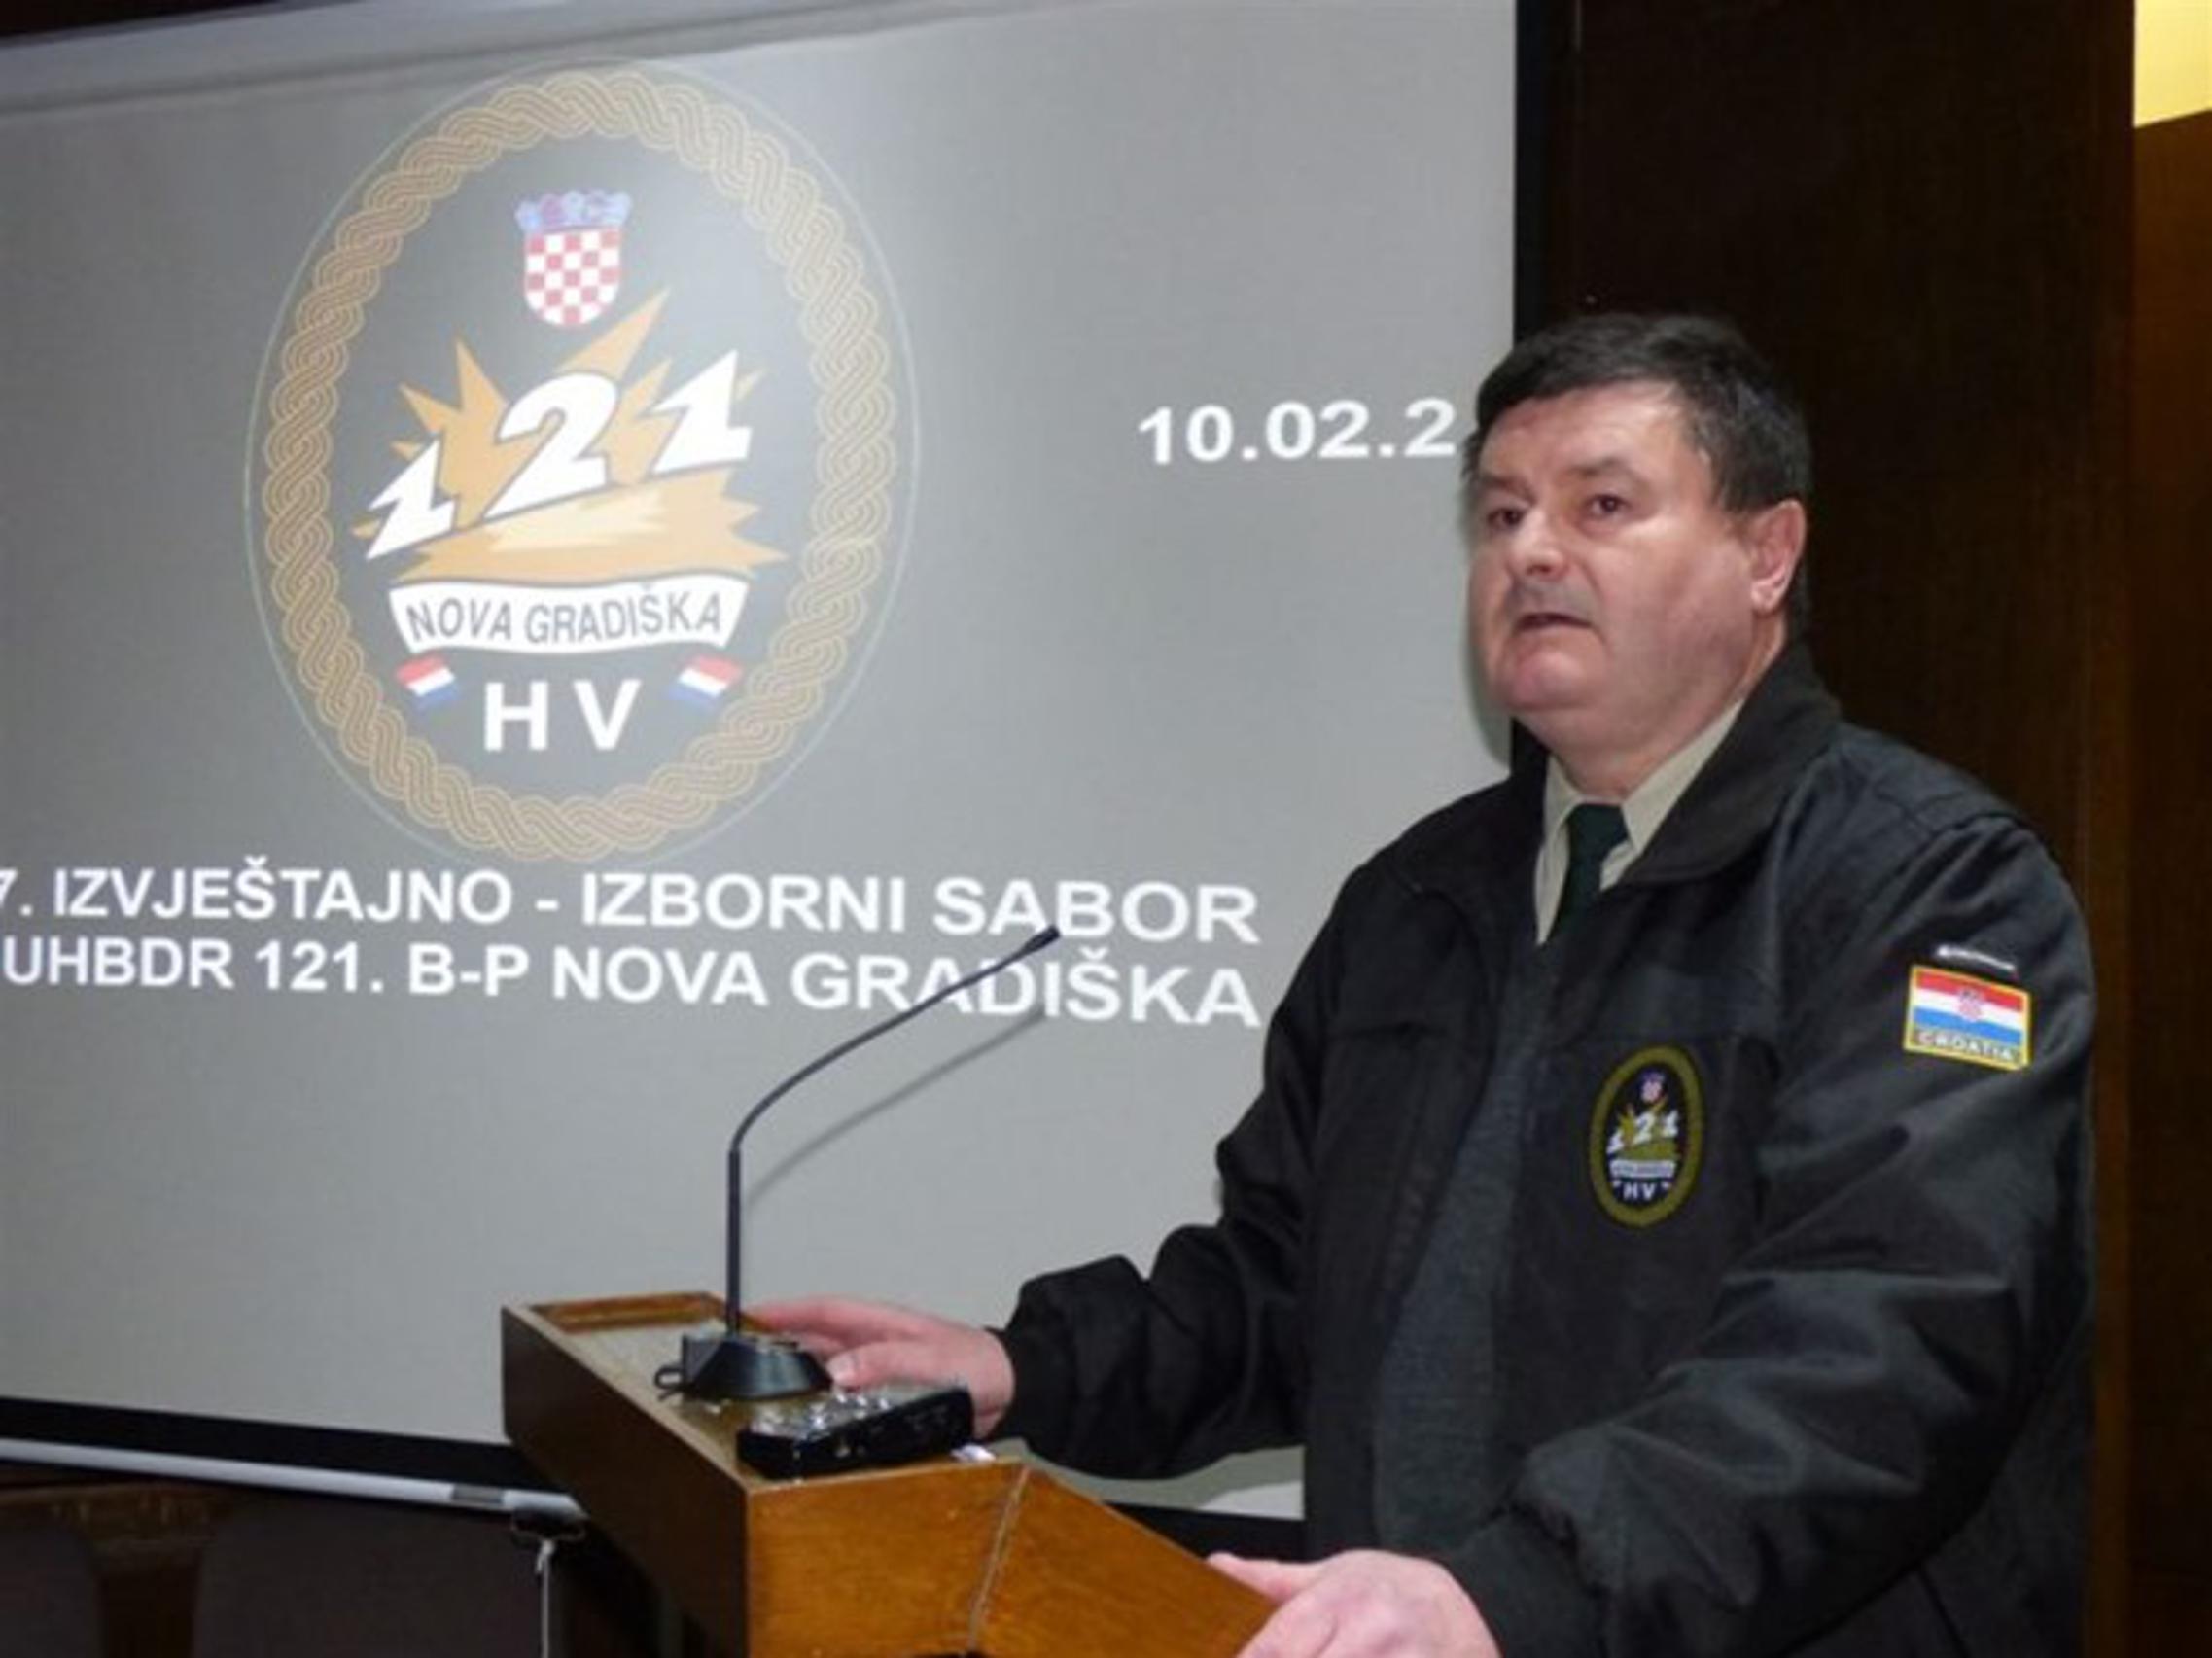 S izvještajno izbornog sabora Udruge hrvatskih branitelja Domovinskog rata 121. brigade-pukovnije NG